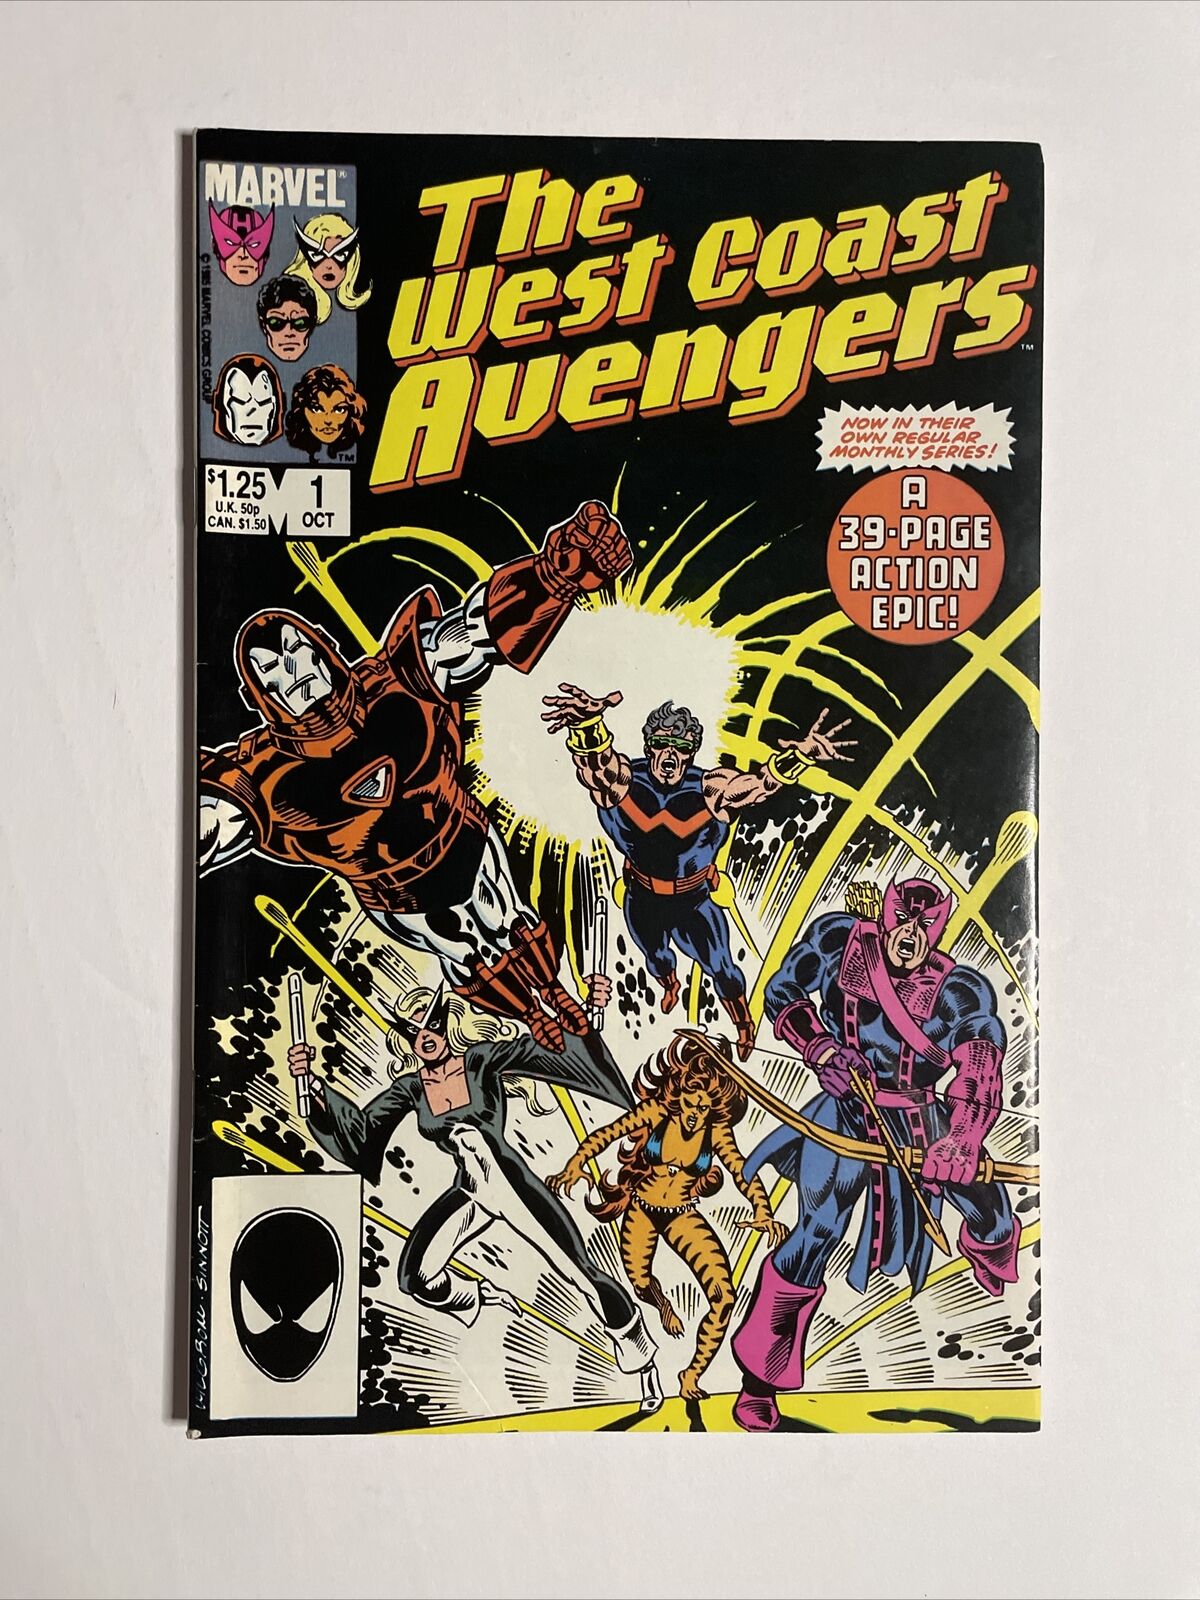 West Coast Avengers #1 (1985) 9.2 NM Marvel Key Issue Comic Book Hawkeye